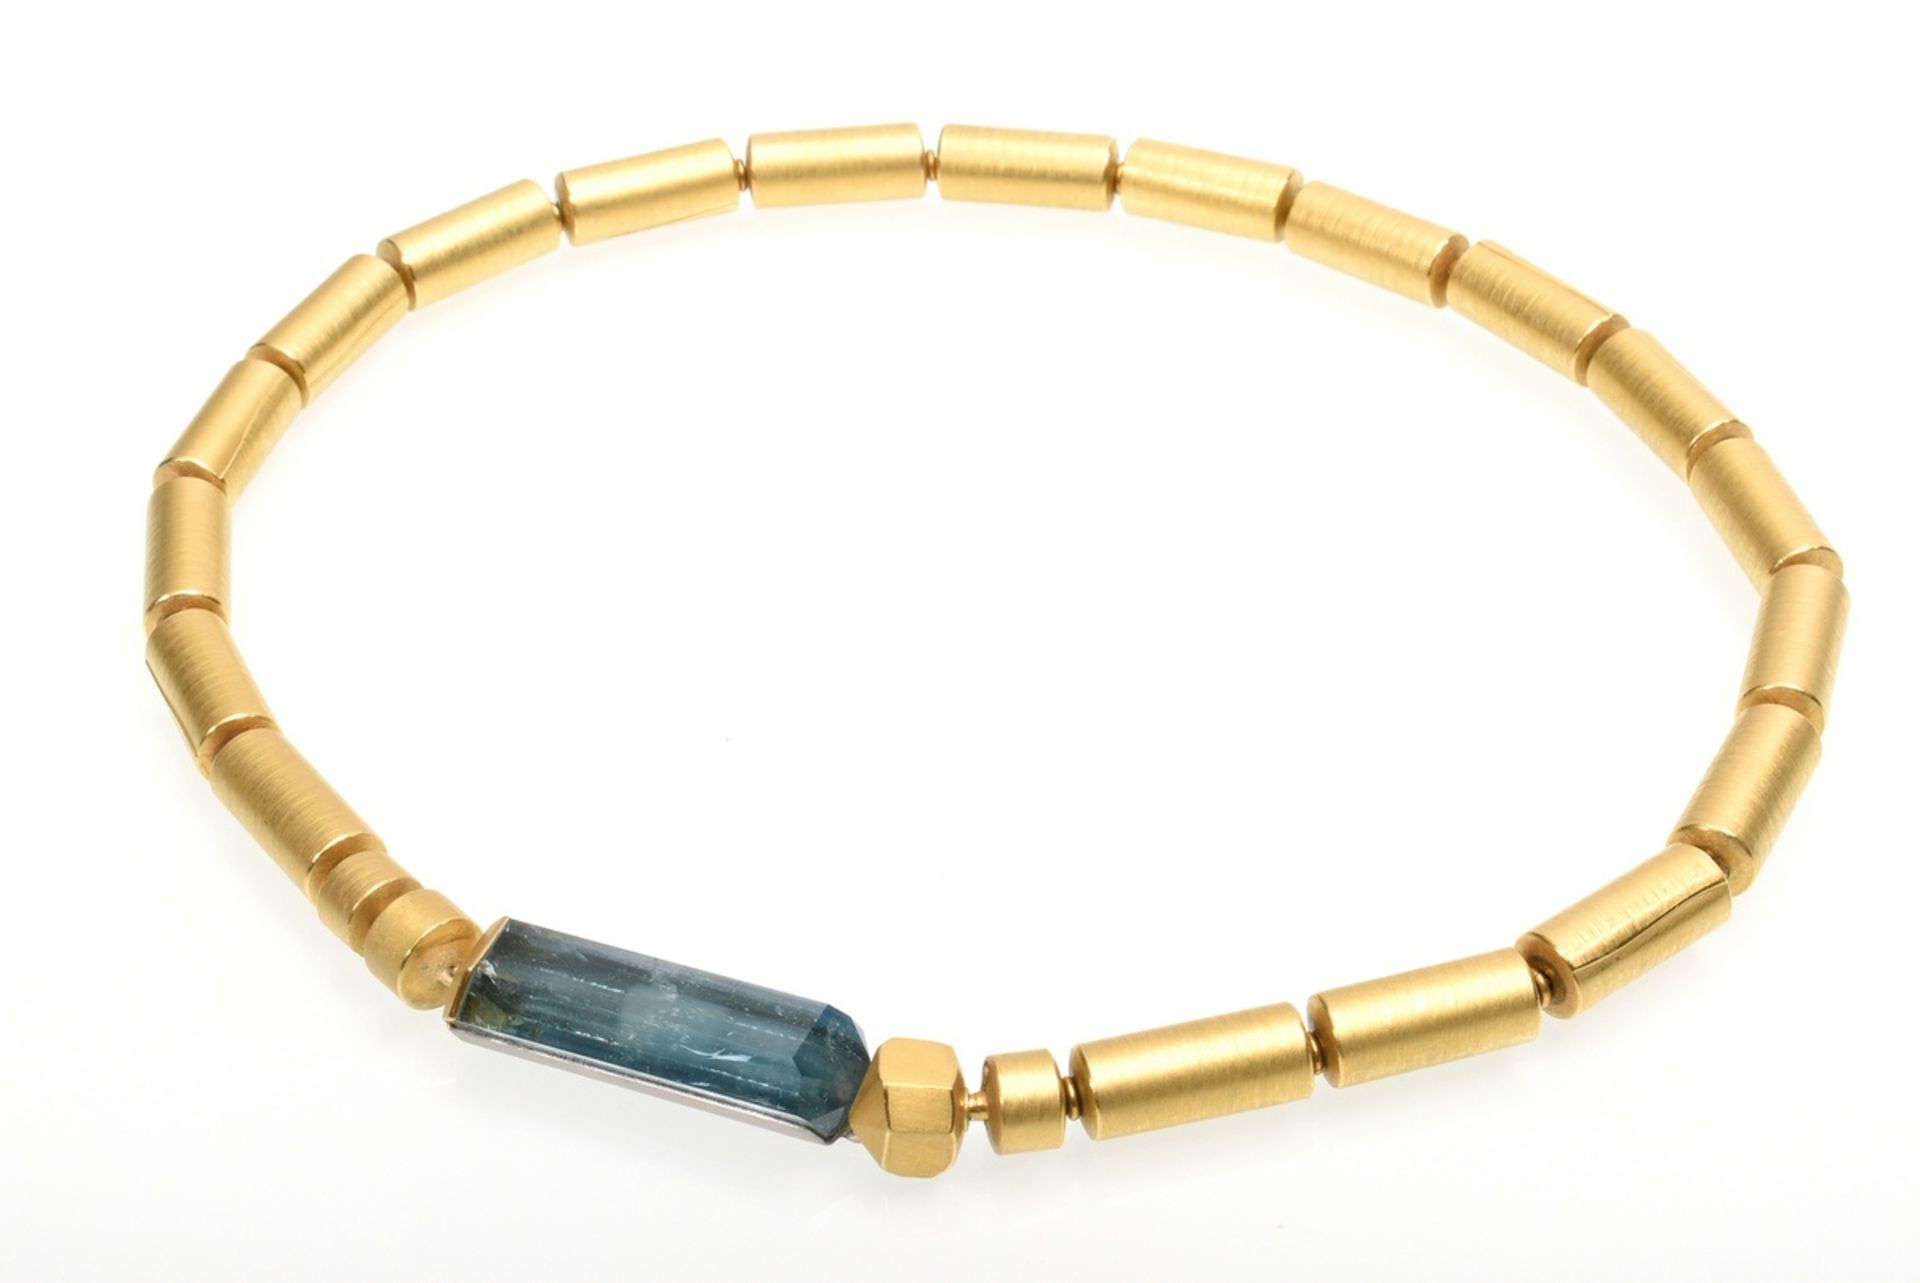 4 pieces avant-garde GG 900 tube necklace (68,8g, l. 44cm) with 3 different clasps: rutile quartz p - Image 11 of 11